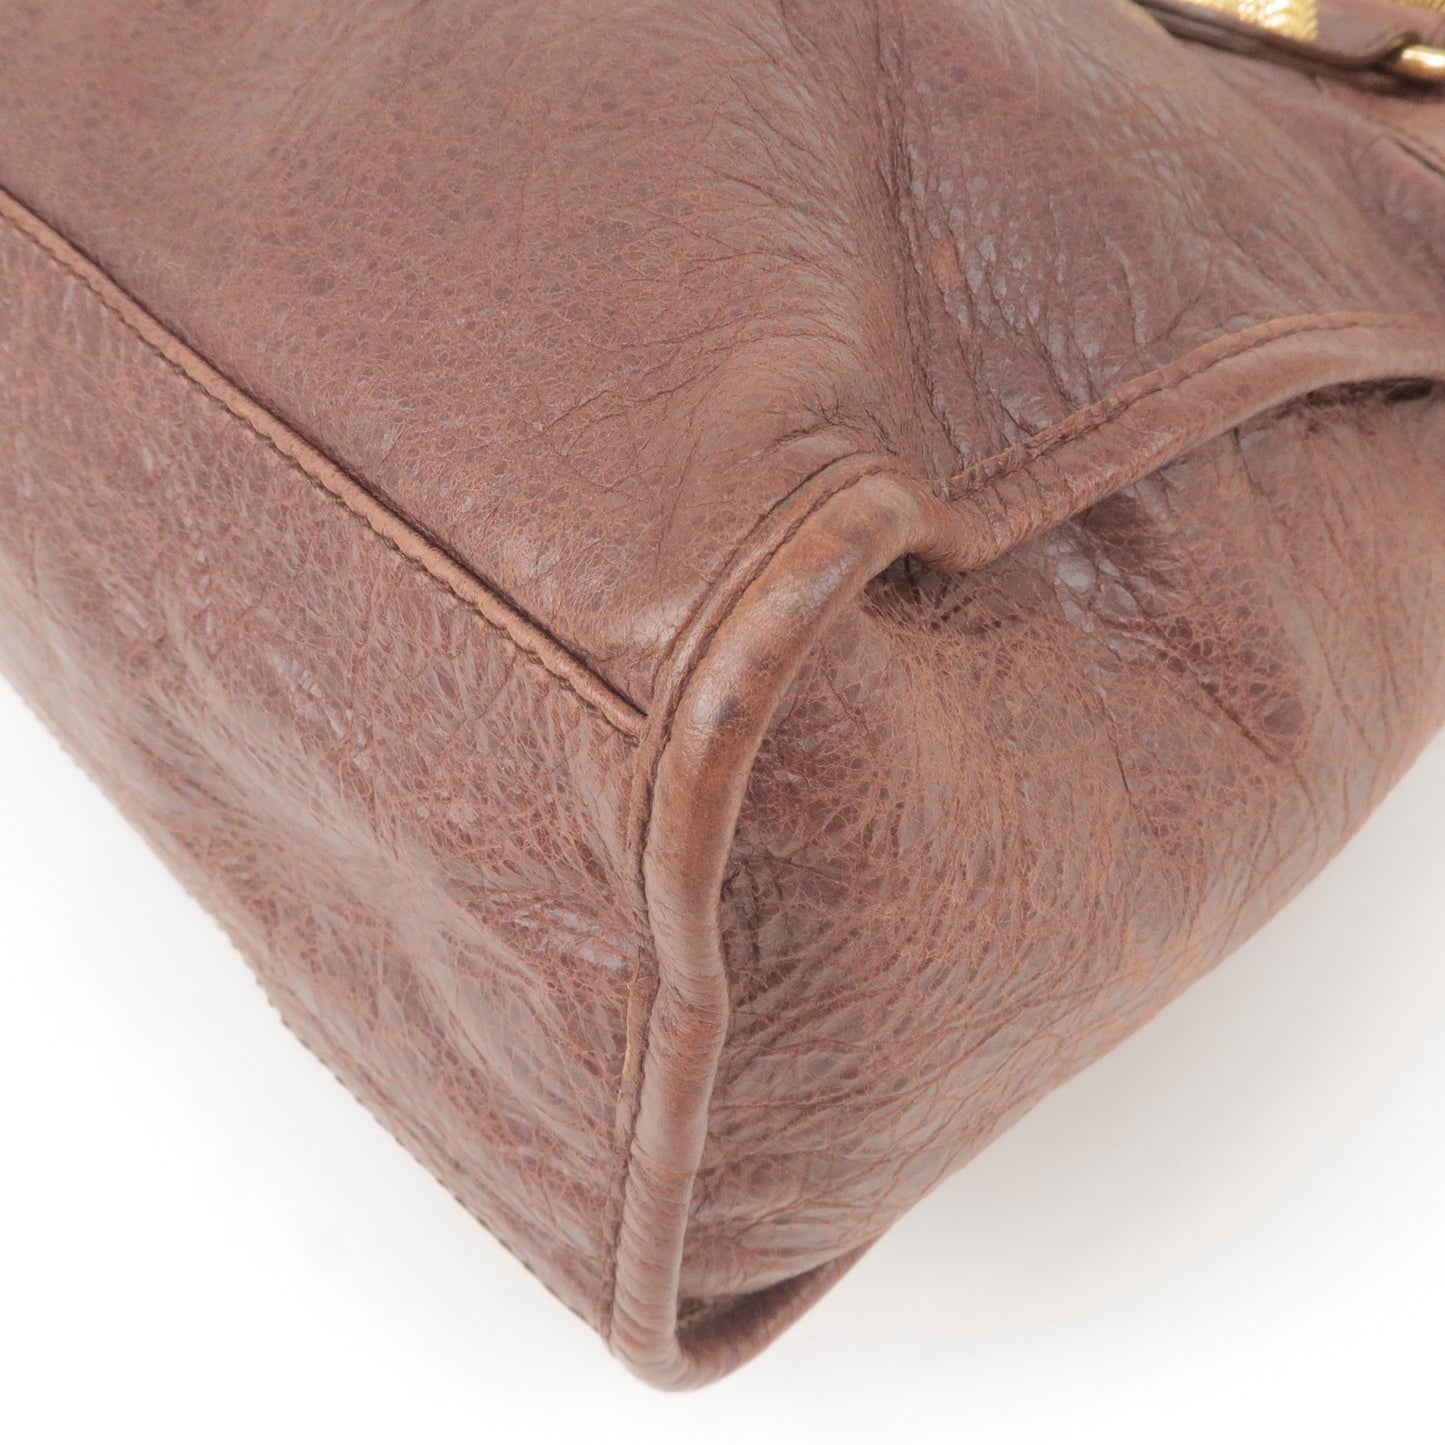 BALENCIAGA Leather The Giant City 2Way Bag Hand Bag Brown 173084